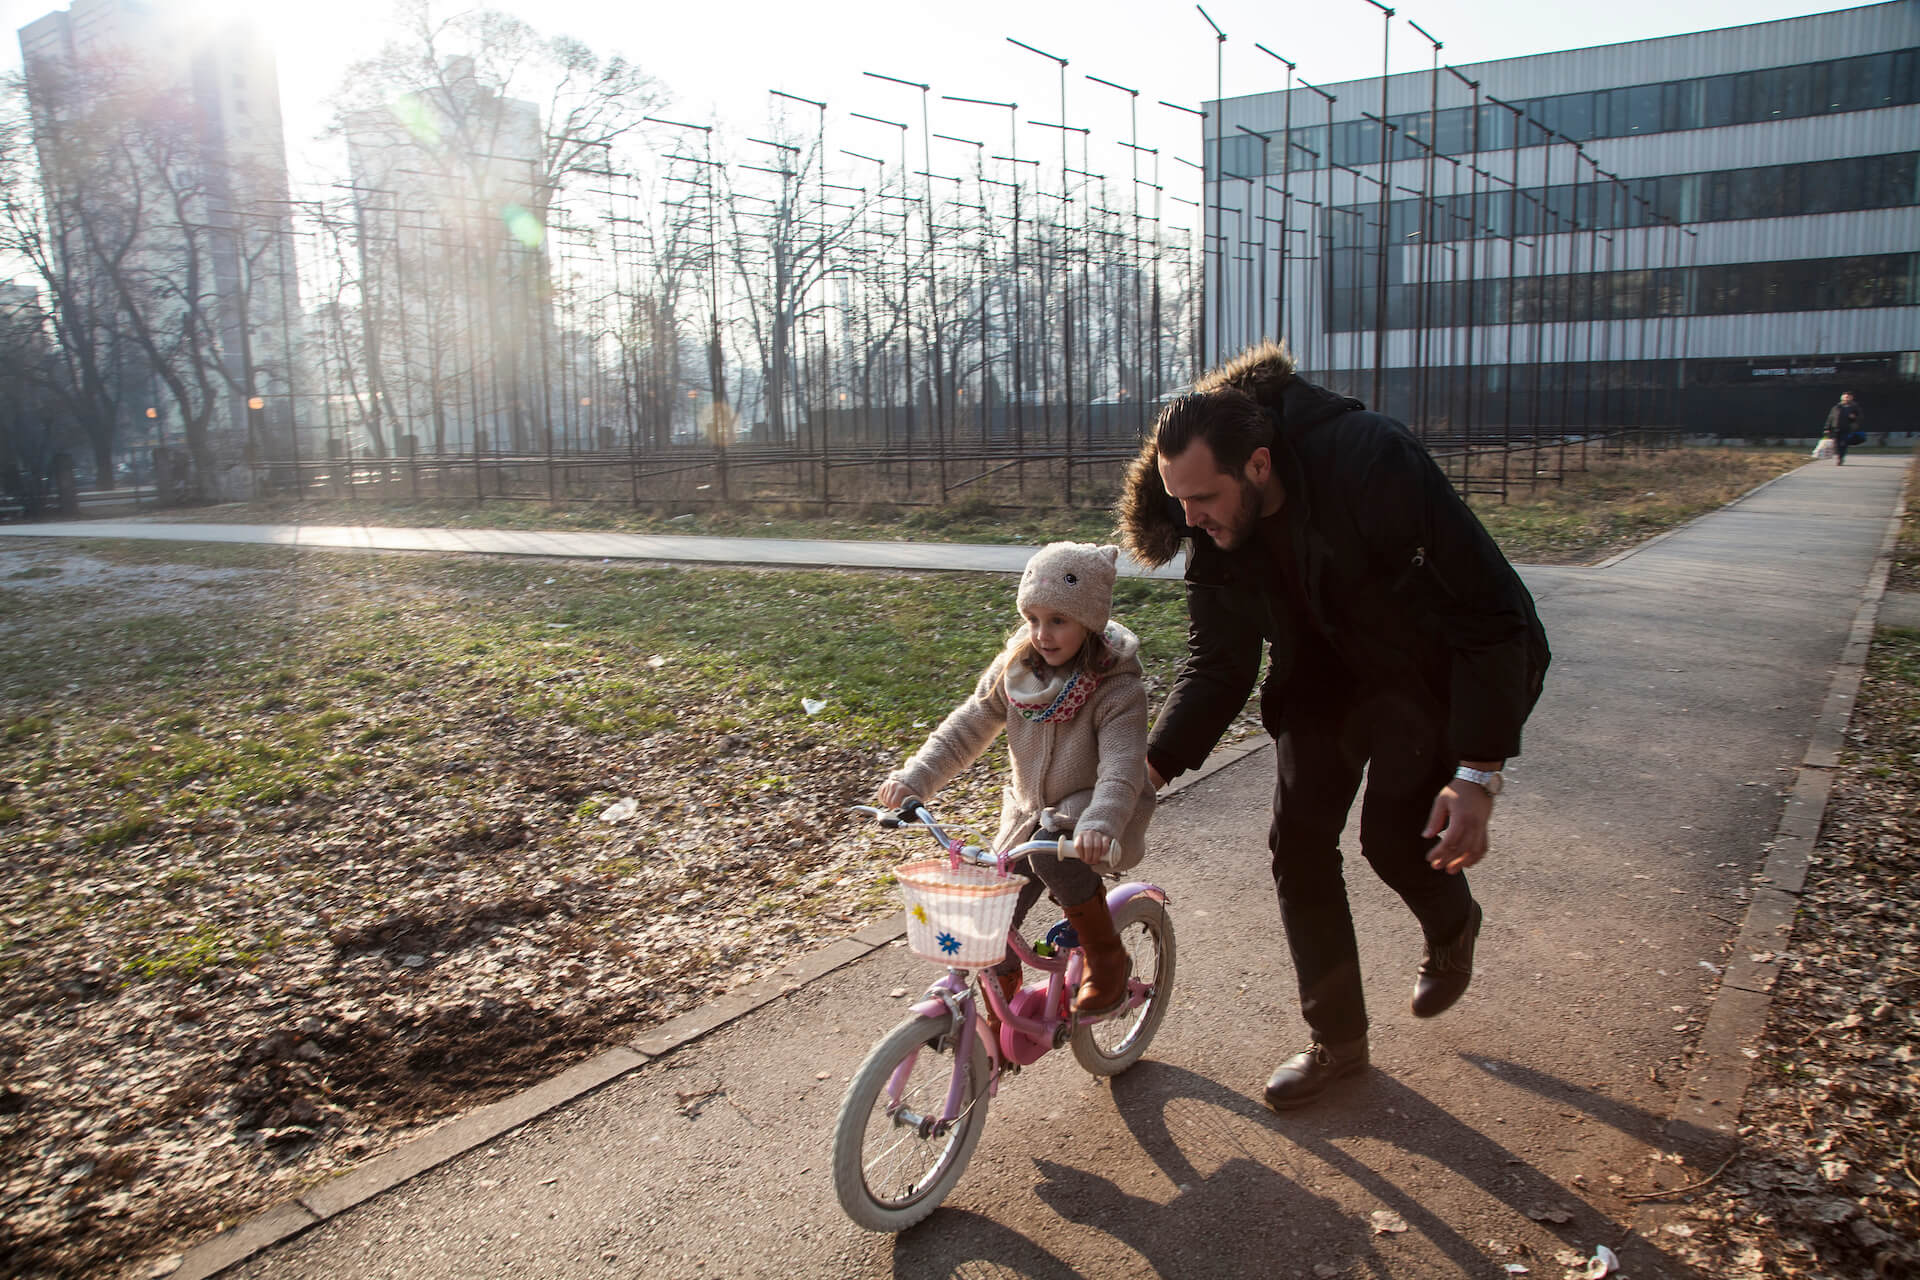 Nihad Hasanović apprend à Enea, sa fille de 5 ans, à faire du vélo. Nihad est un père au foyer, dont la femme travaille pendant la journée. Il s'occupe du ménage et de leur fille.